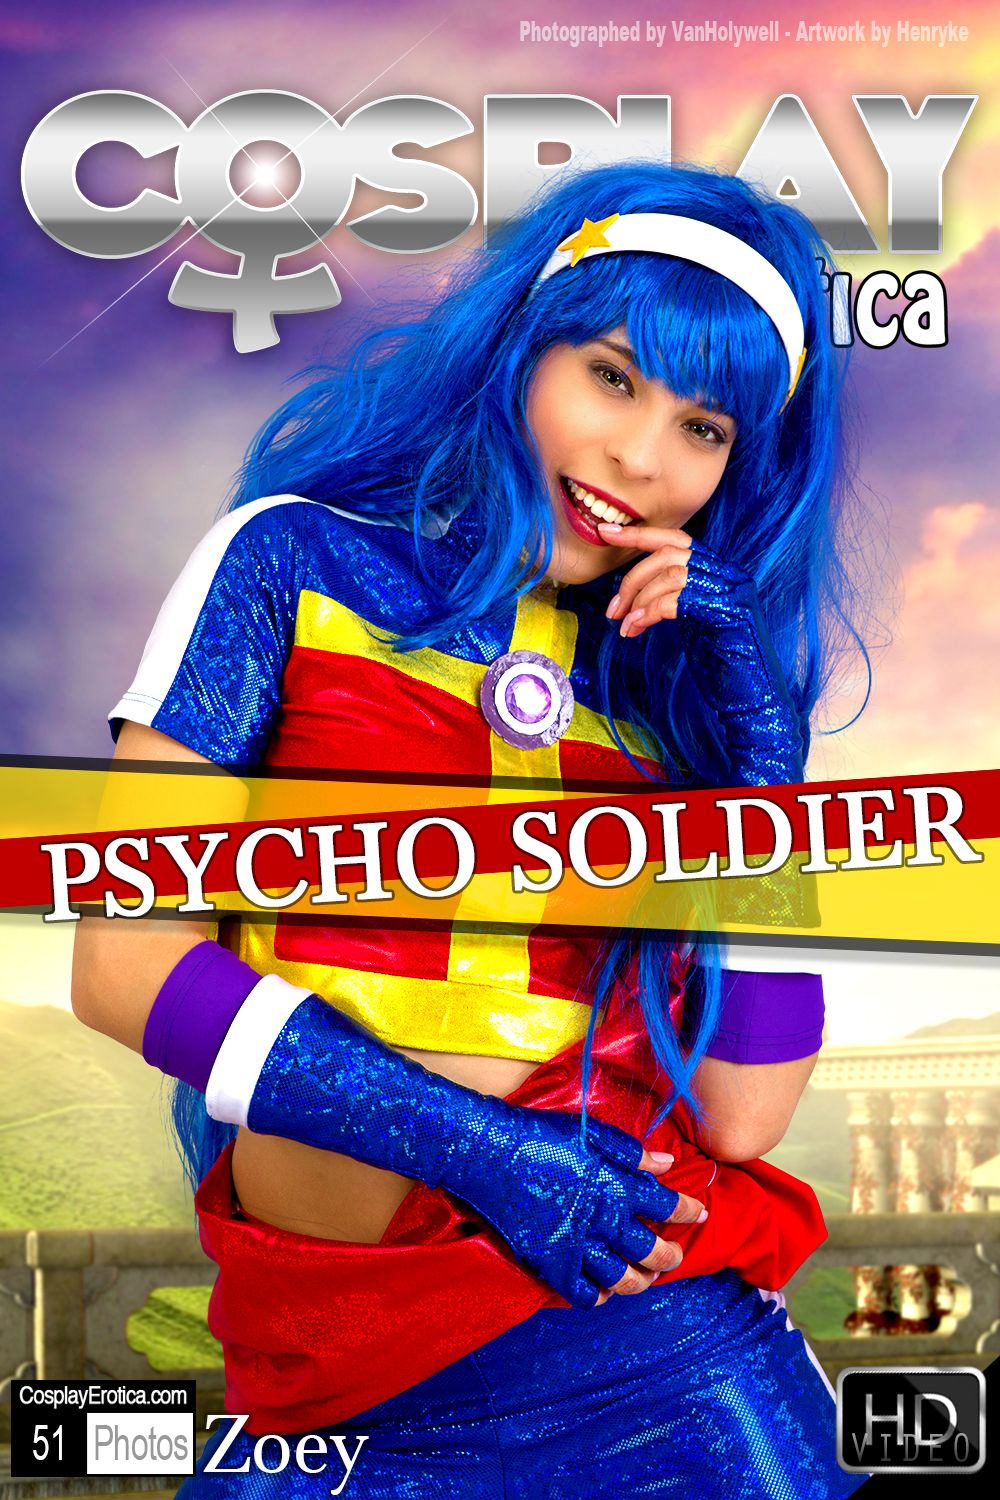 CP-2017-01-28 - Zoey - Psycho Soldier 15 (1).jpg